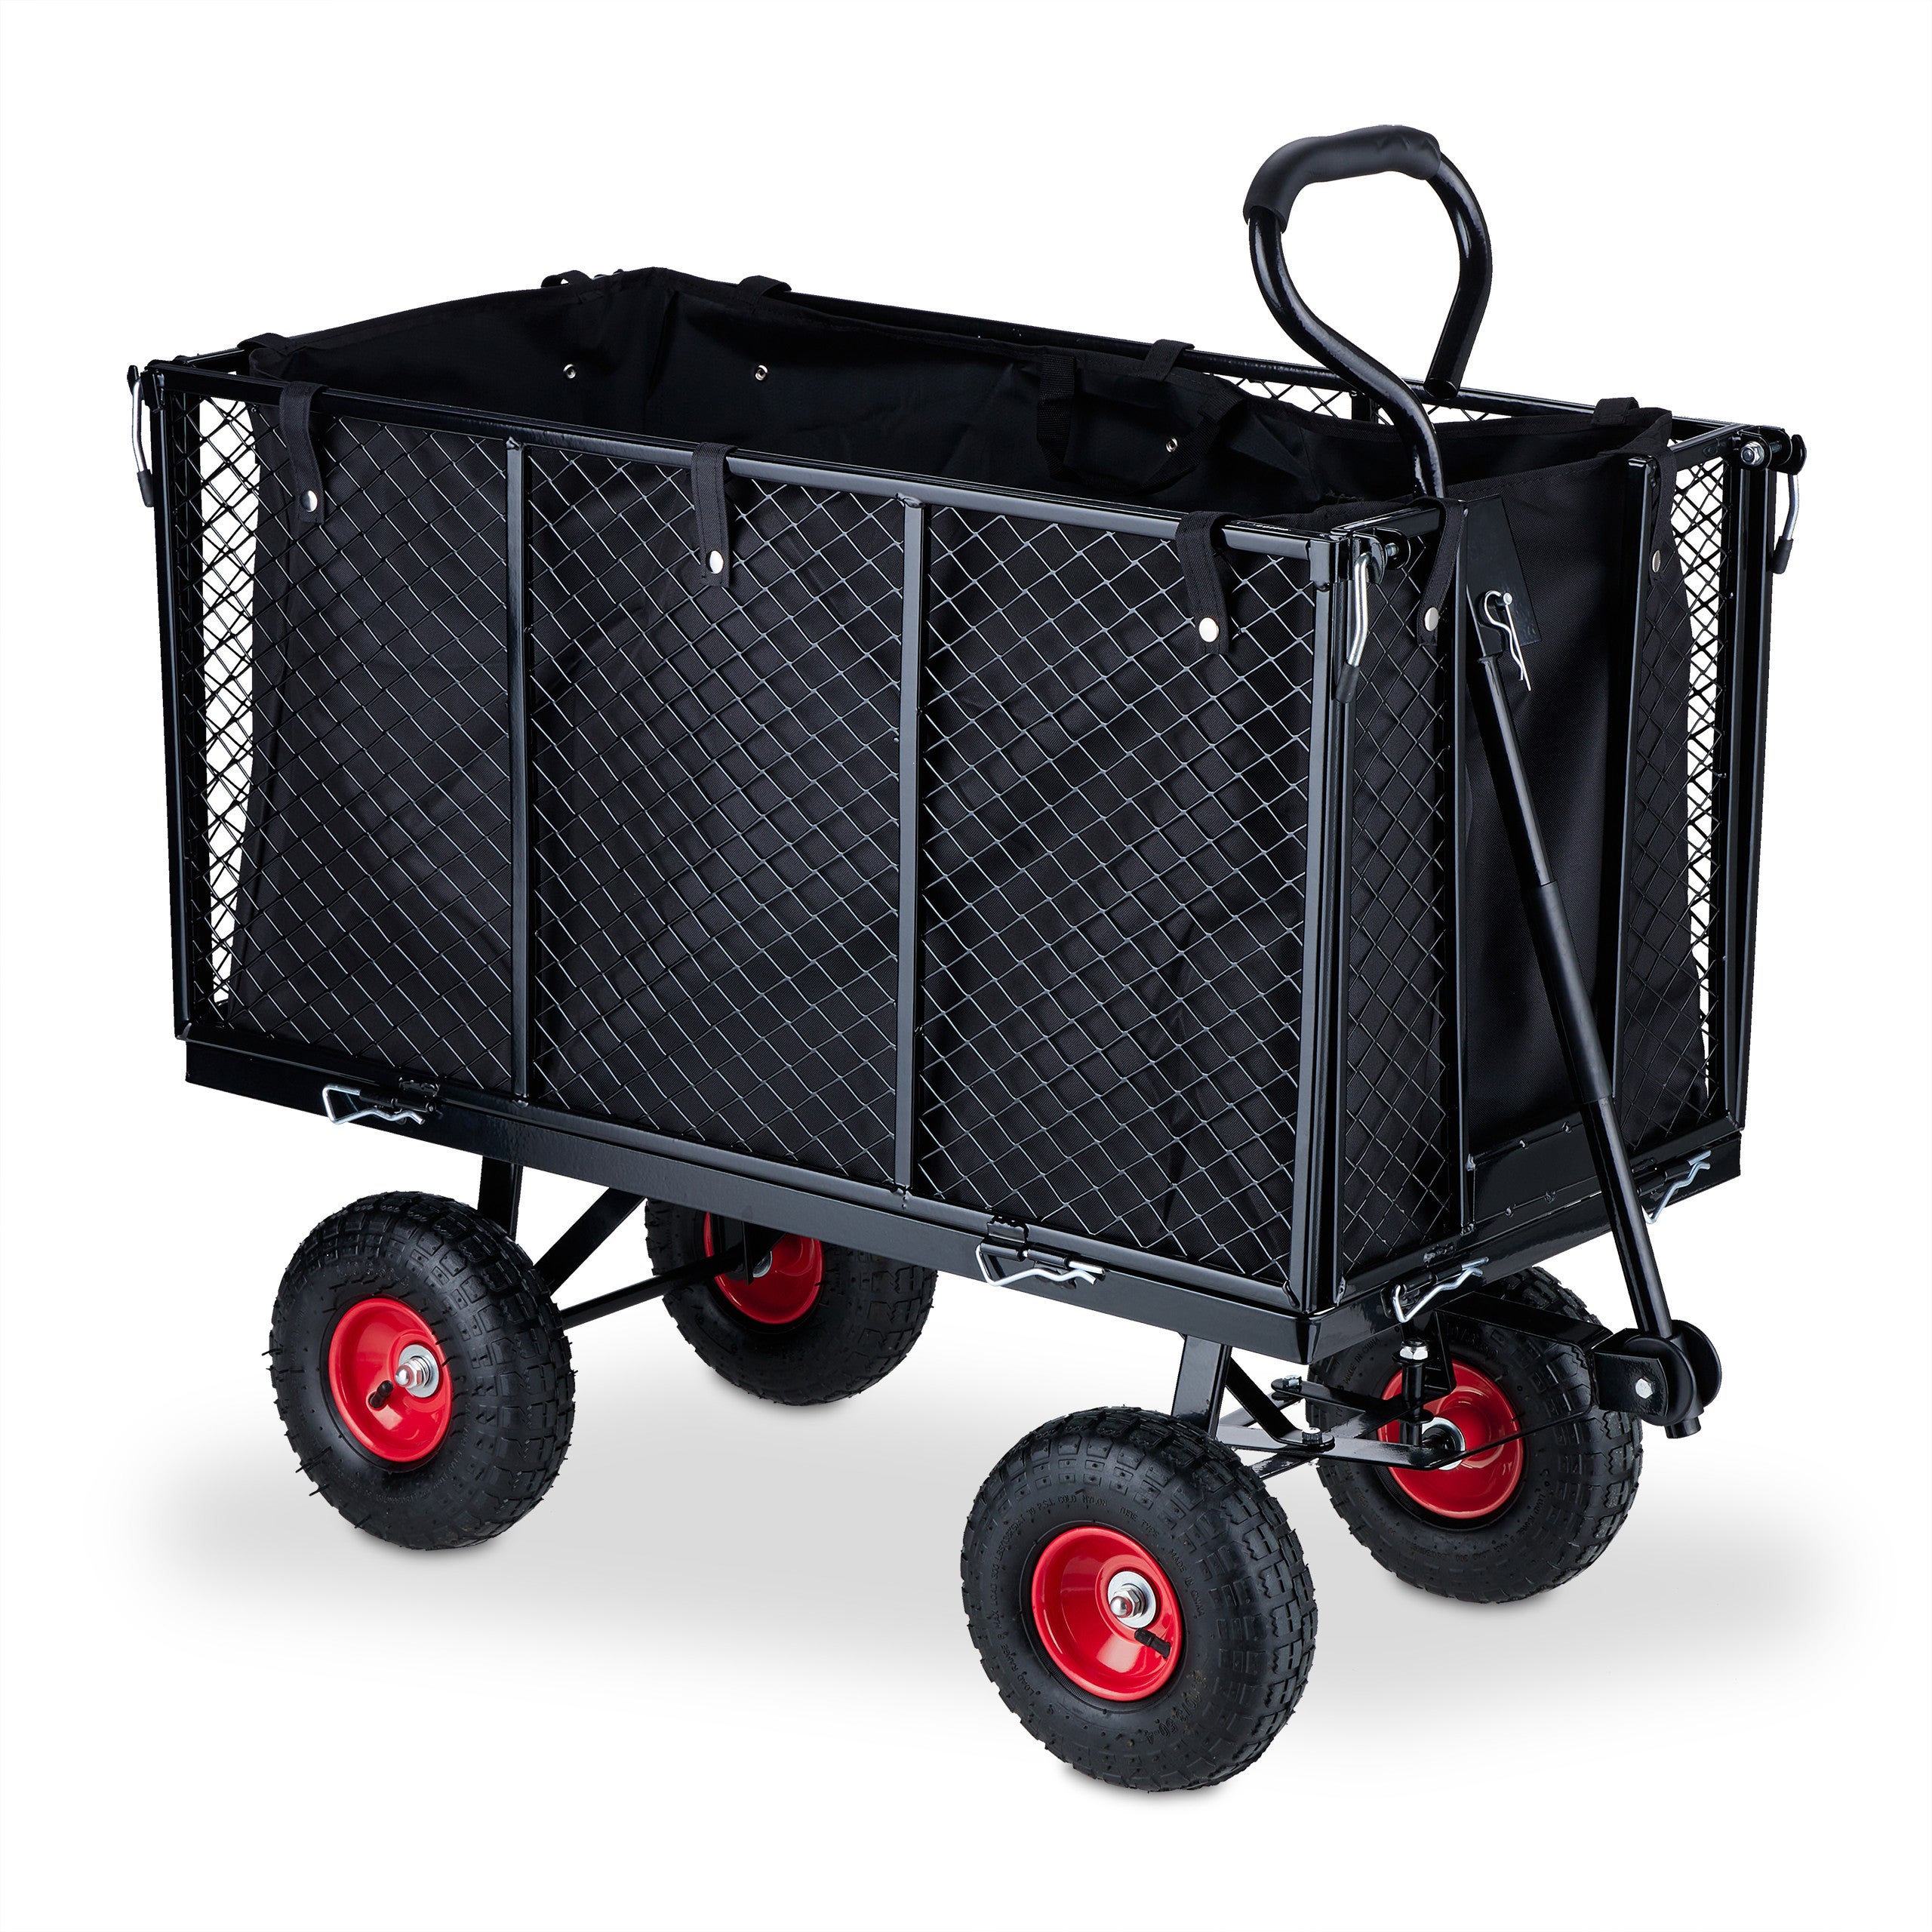 Relaxdays Chariot de transport, côtés rabattables, poignées pour porter le  contenant, jardin, capacité de 500 kg, noir